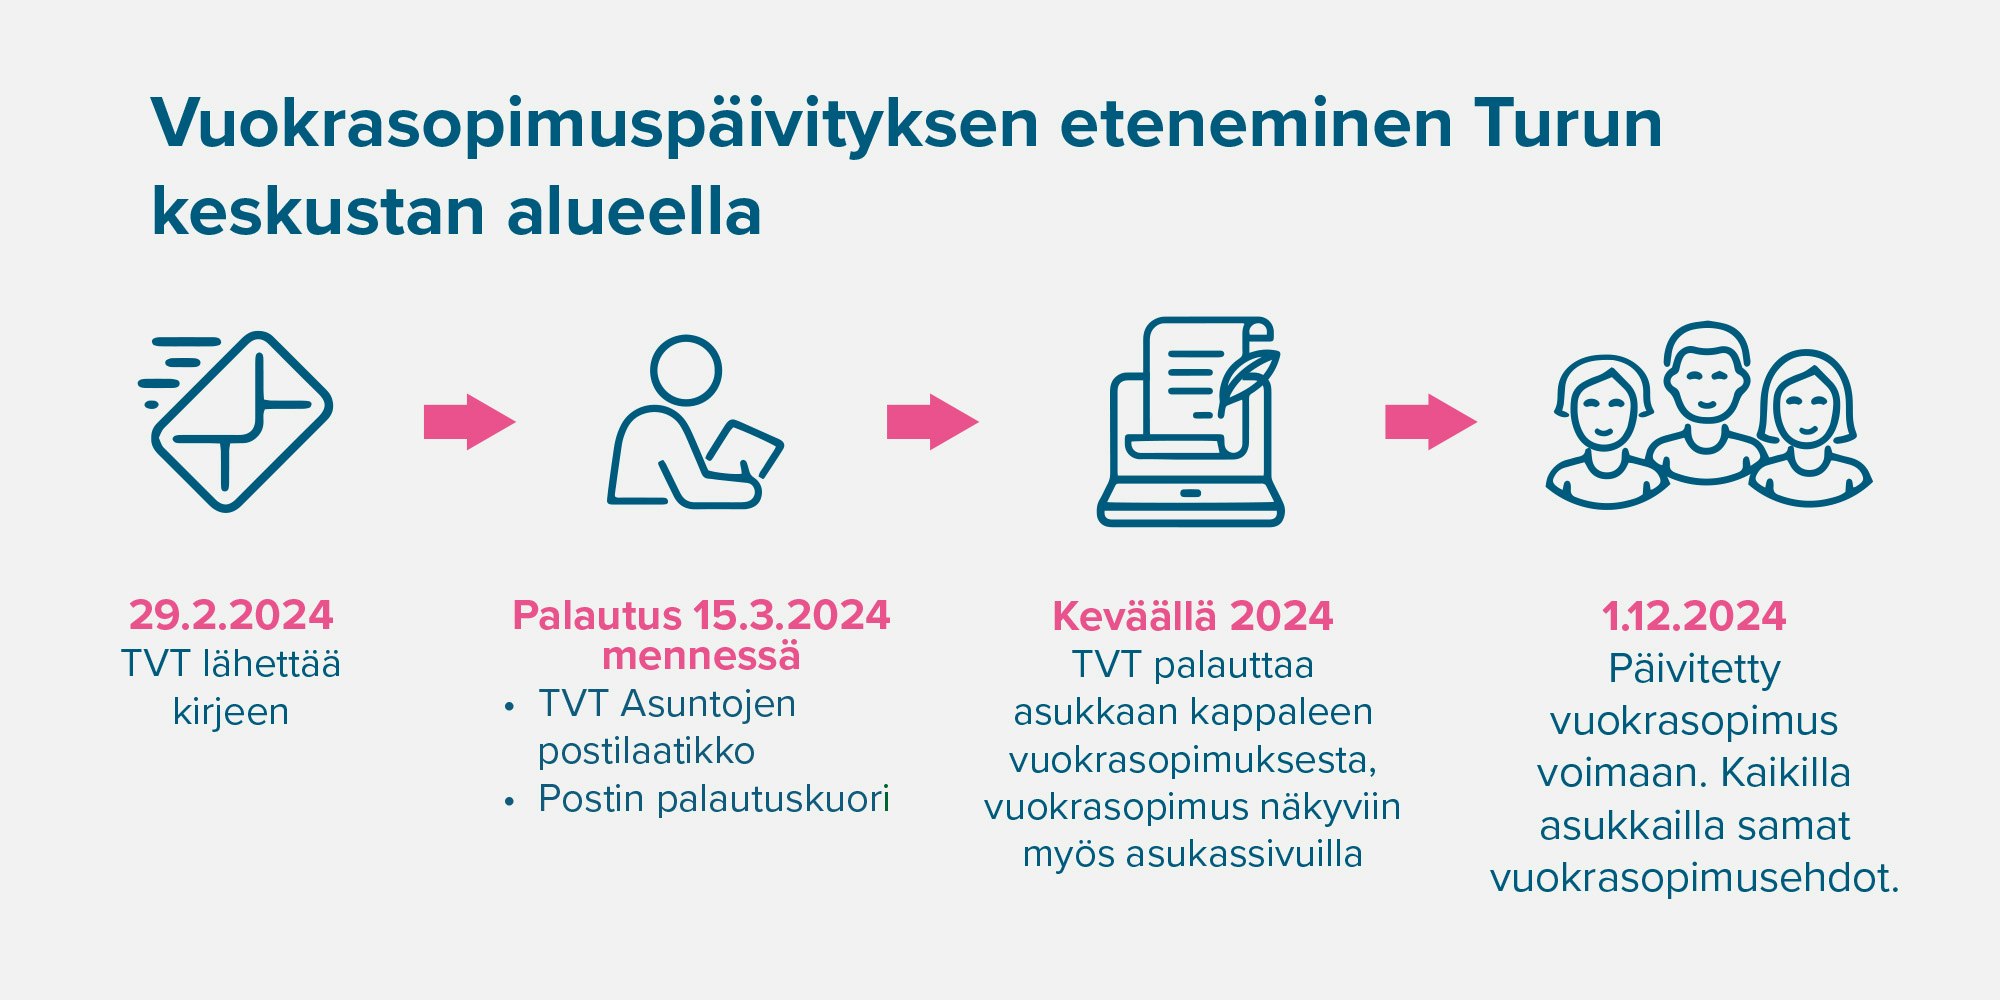 Infograafi vuokrasopimuspäivitysten etenemisestä Turun keskustan alueella.